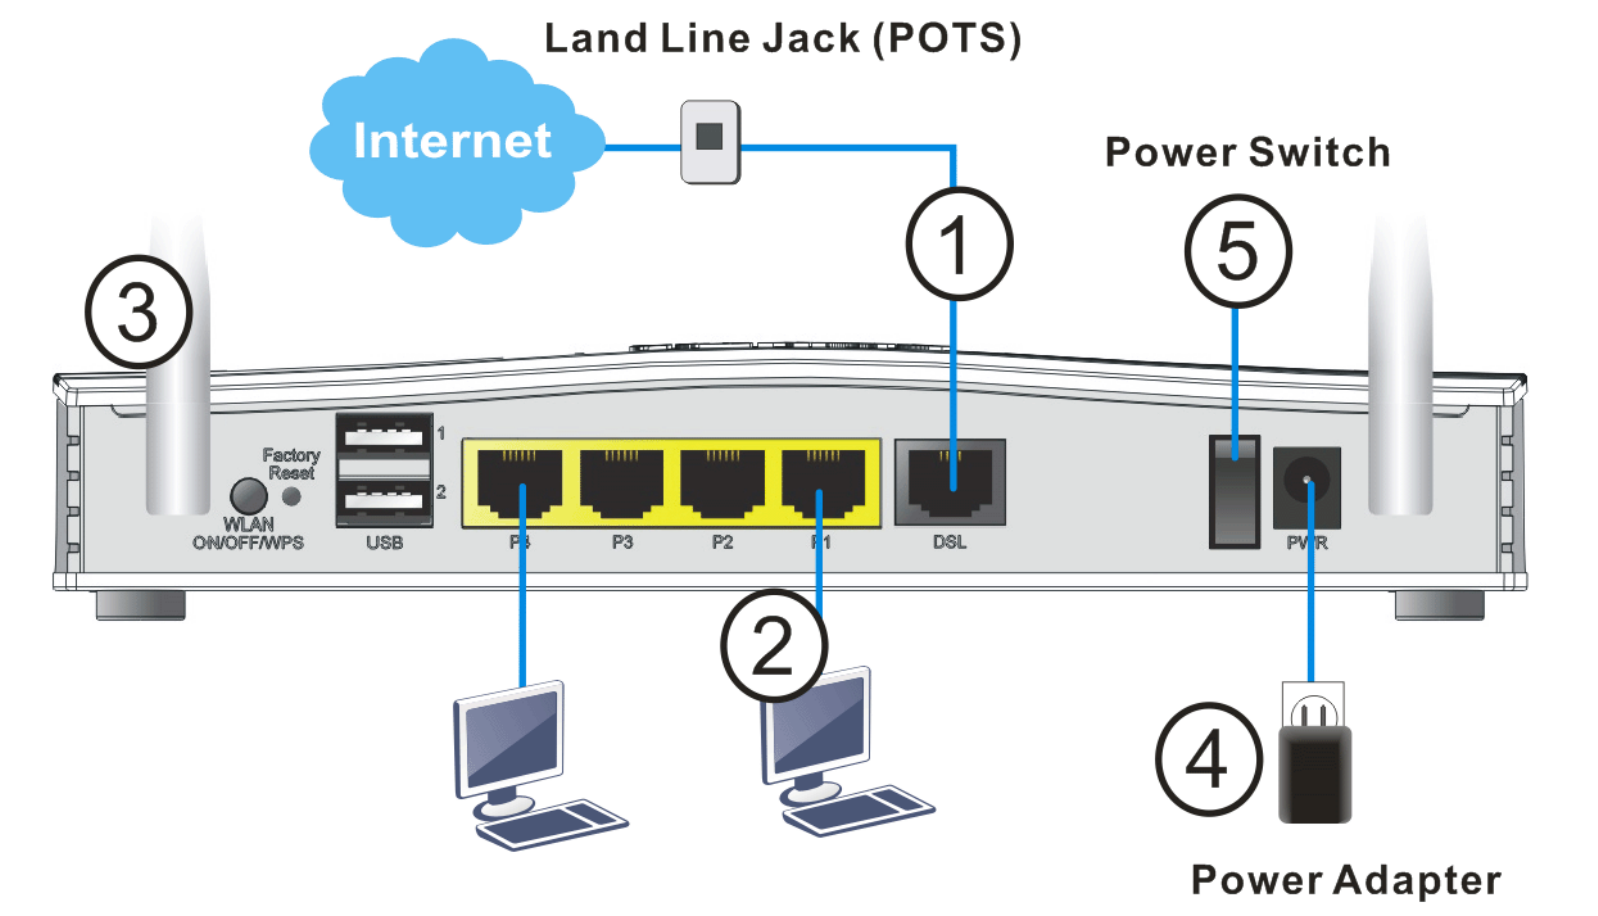 Draytek v2763 router ports